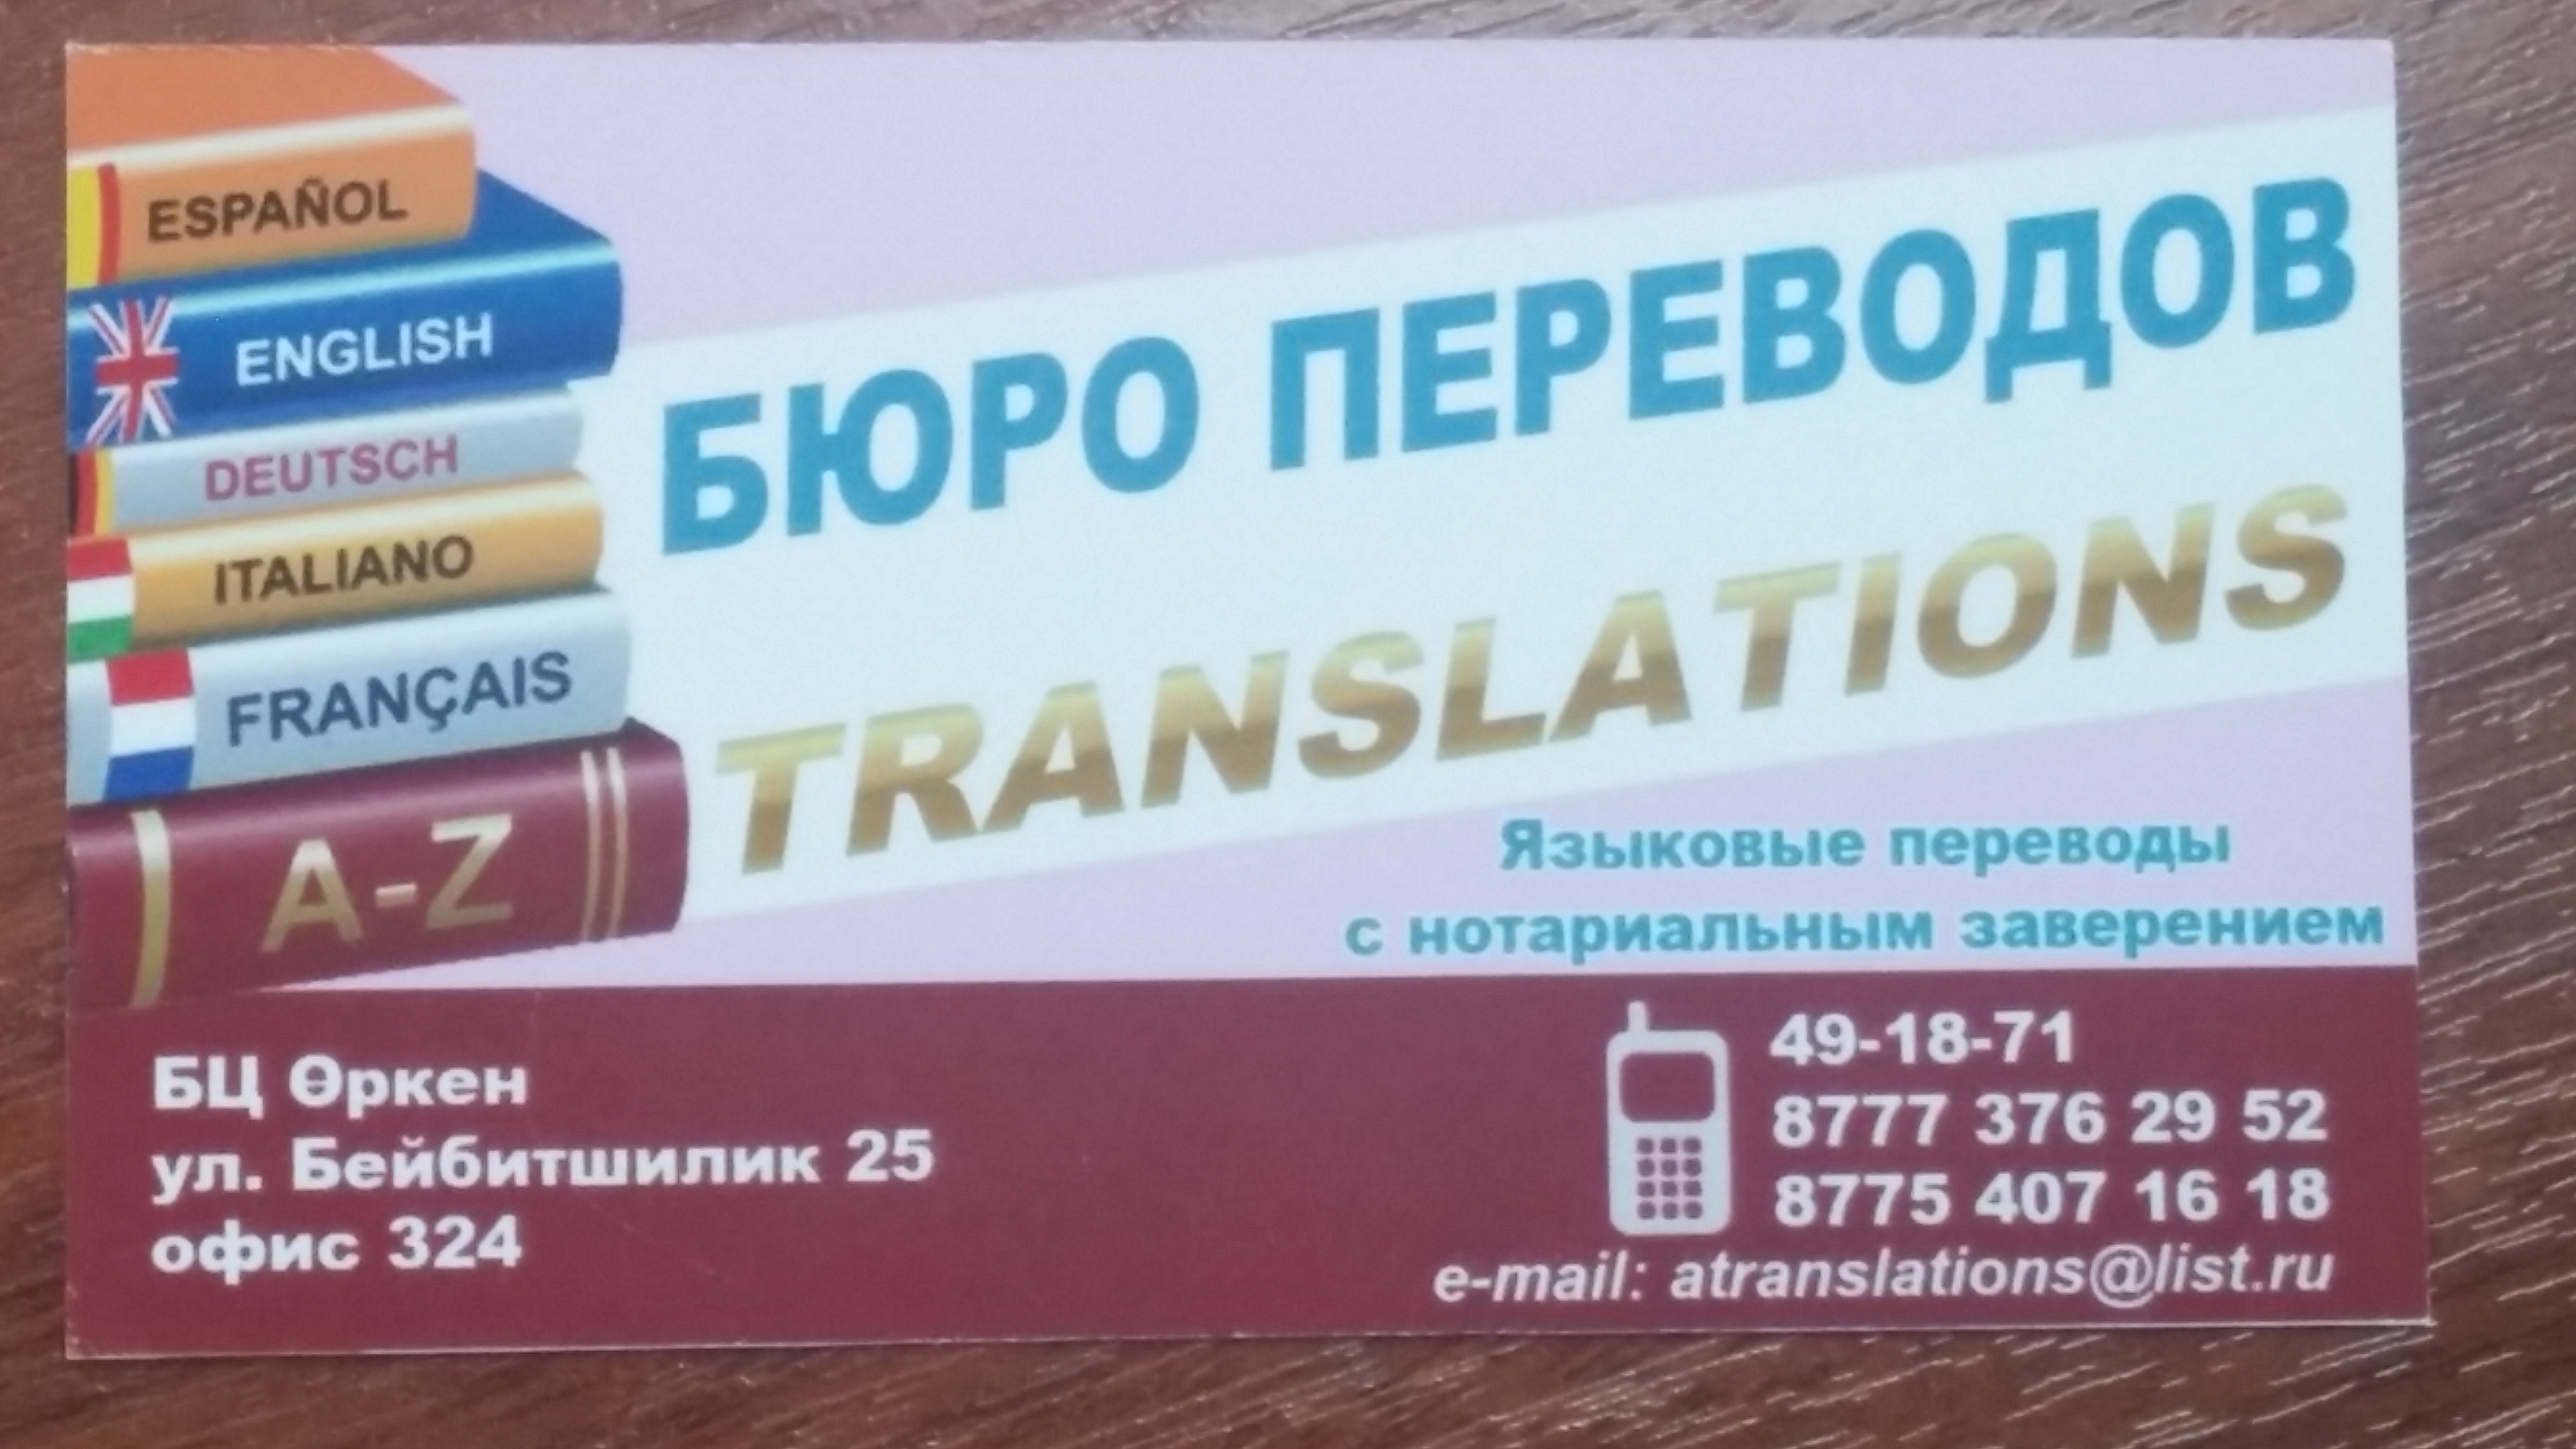 Бюро переводов 